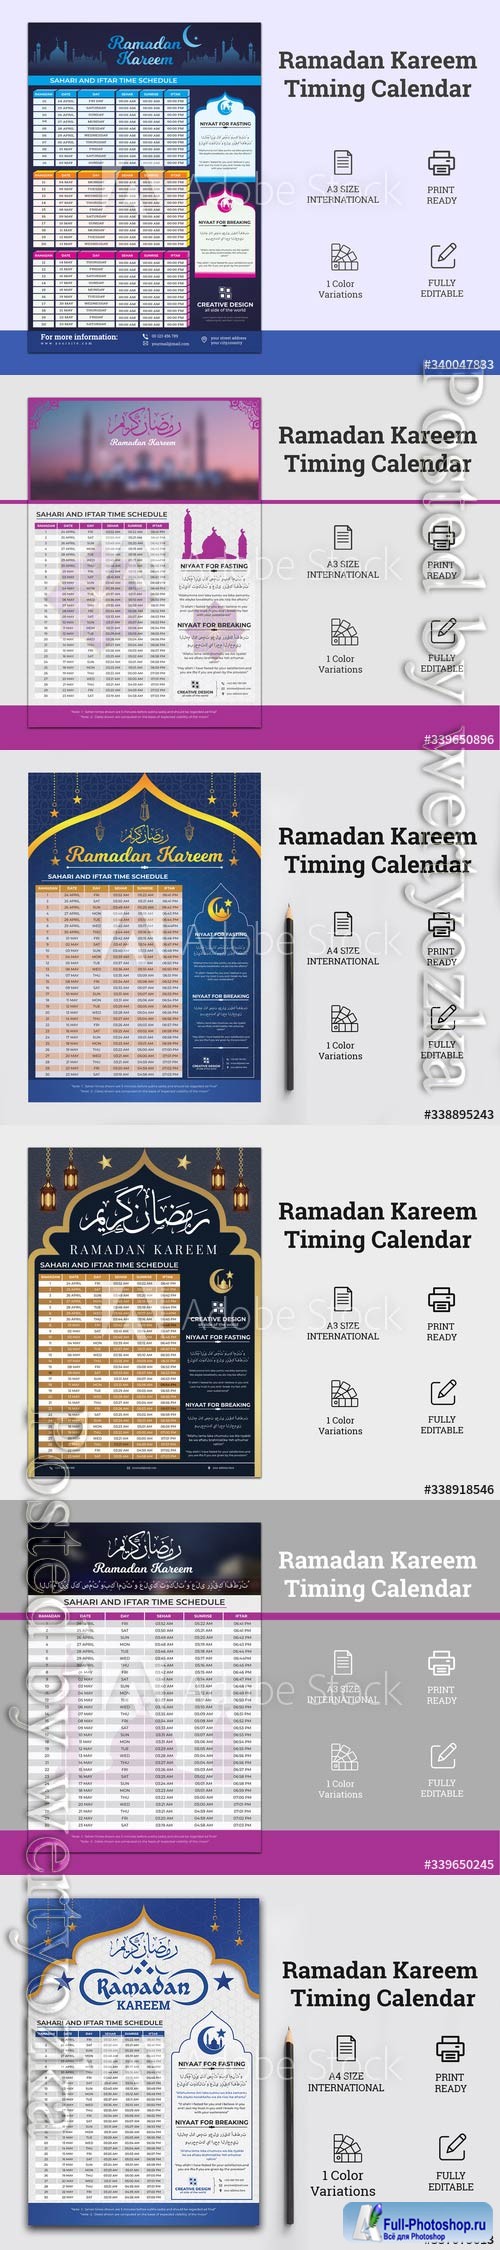 Ramadan Kareem calendar for fasting and prayer time guide